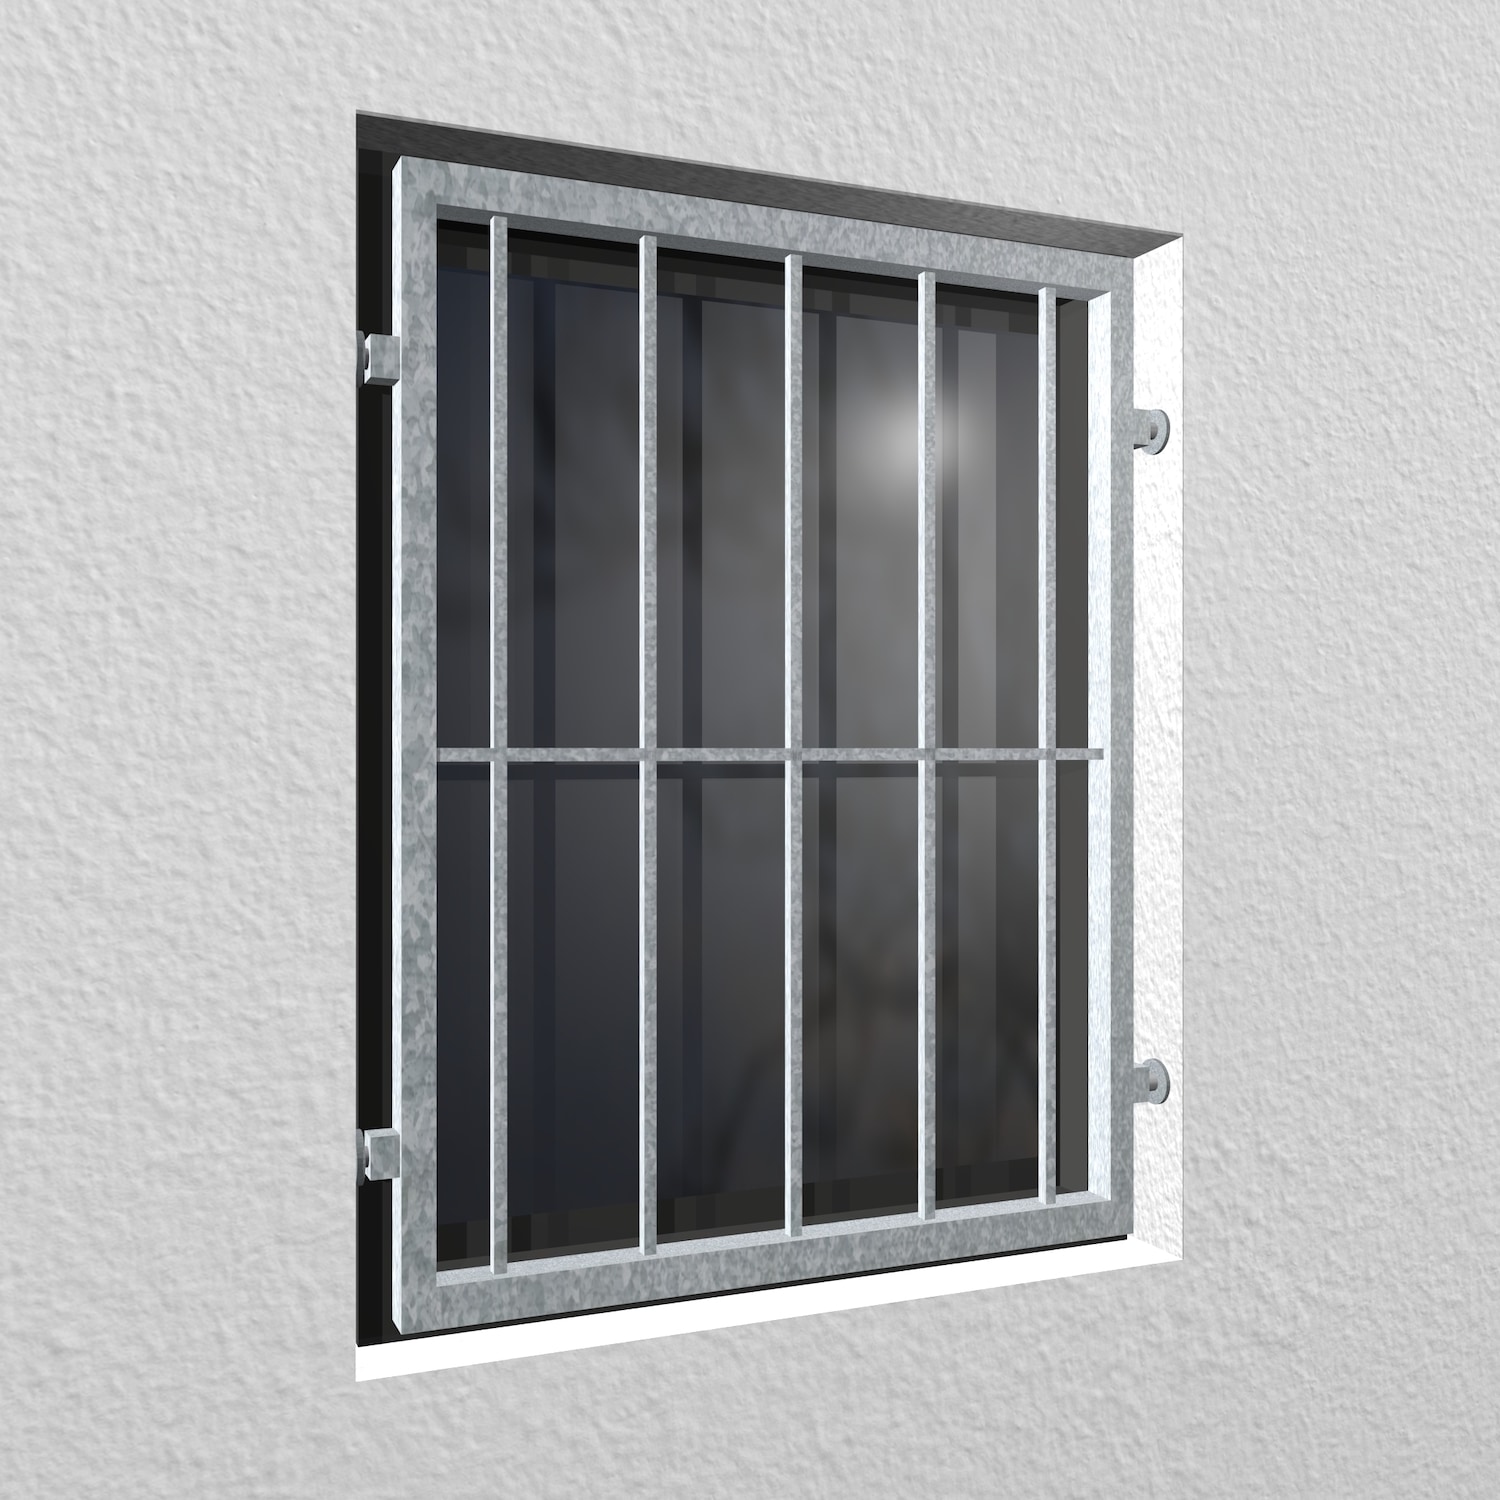 Grille de défense pour fenêtres en acier galvanisé mobile à barre verticale